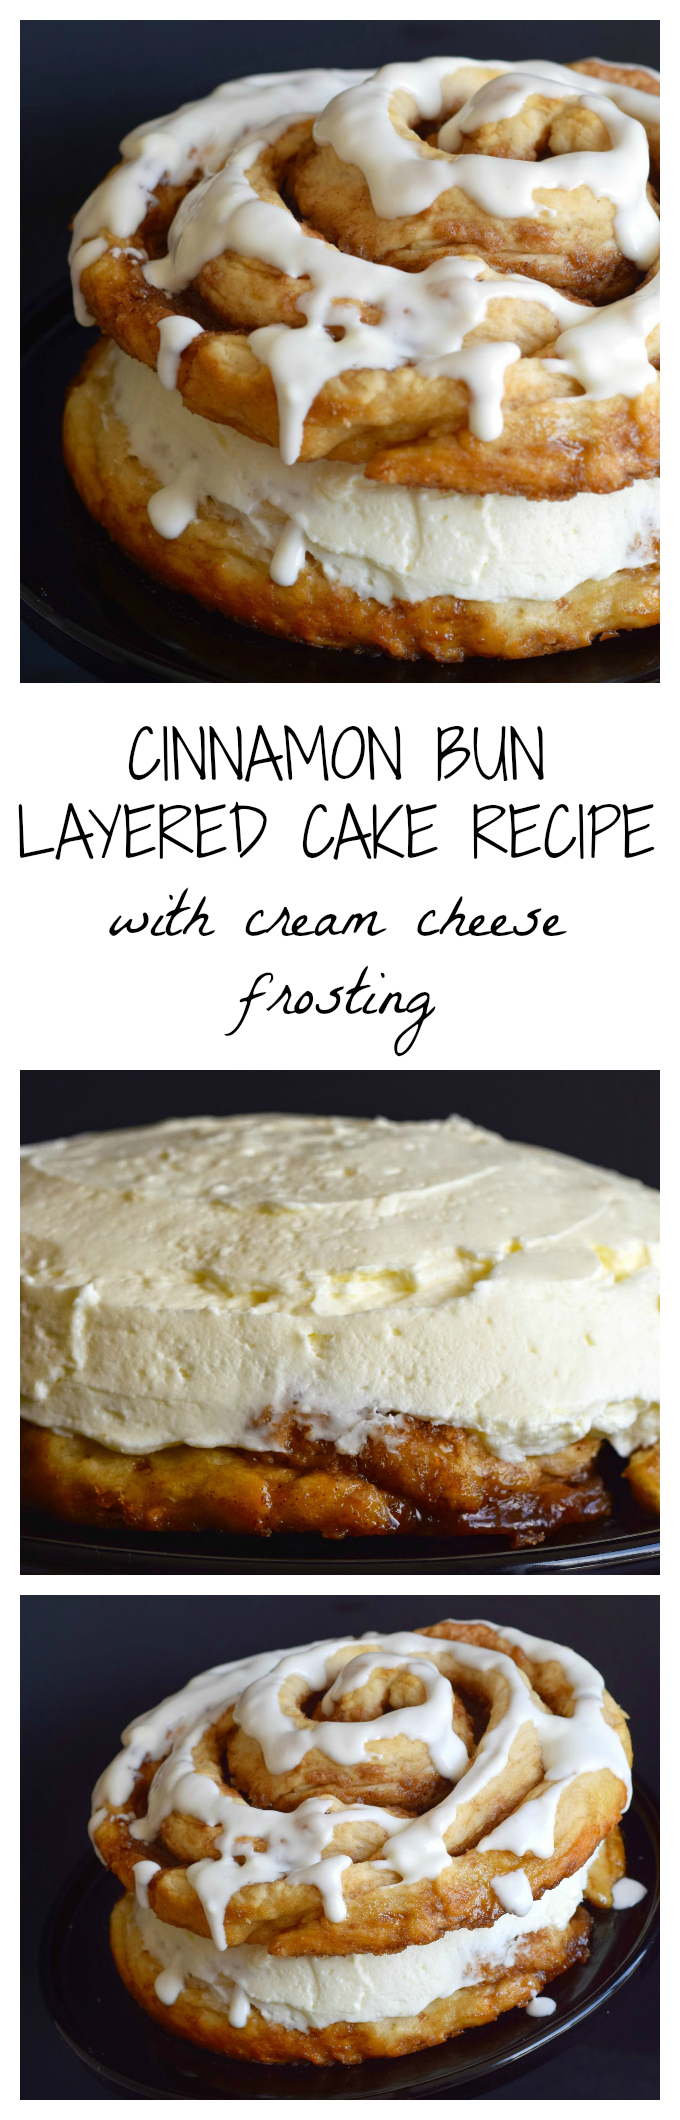 Cinnamon Bun Layered Cake Recipe